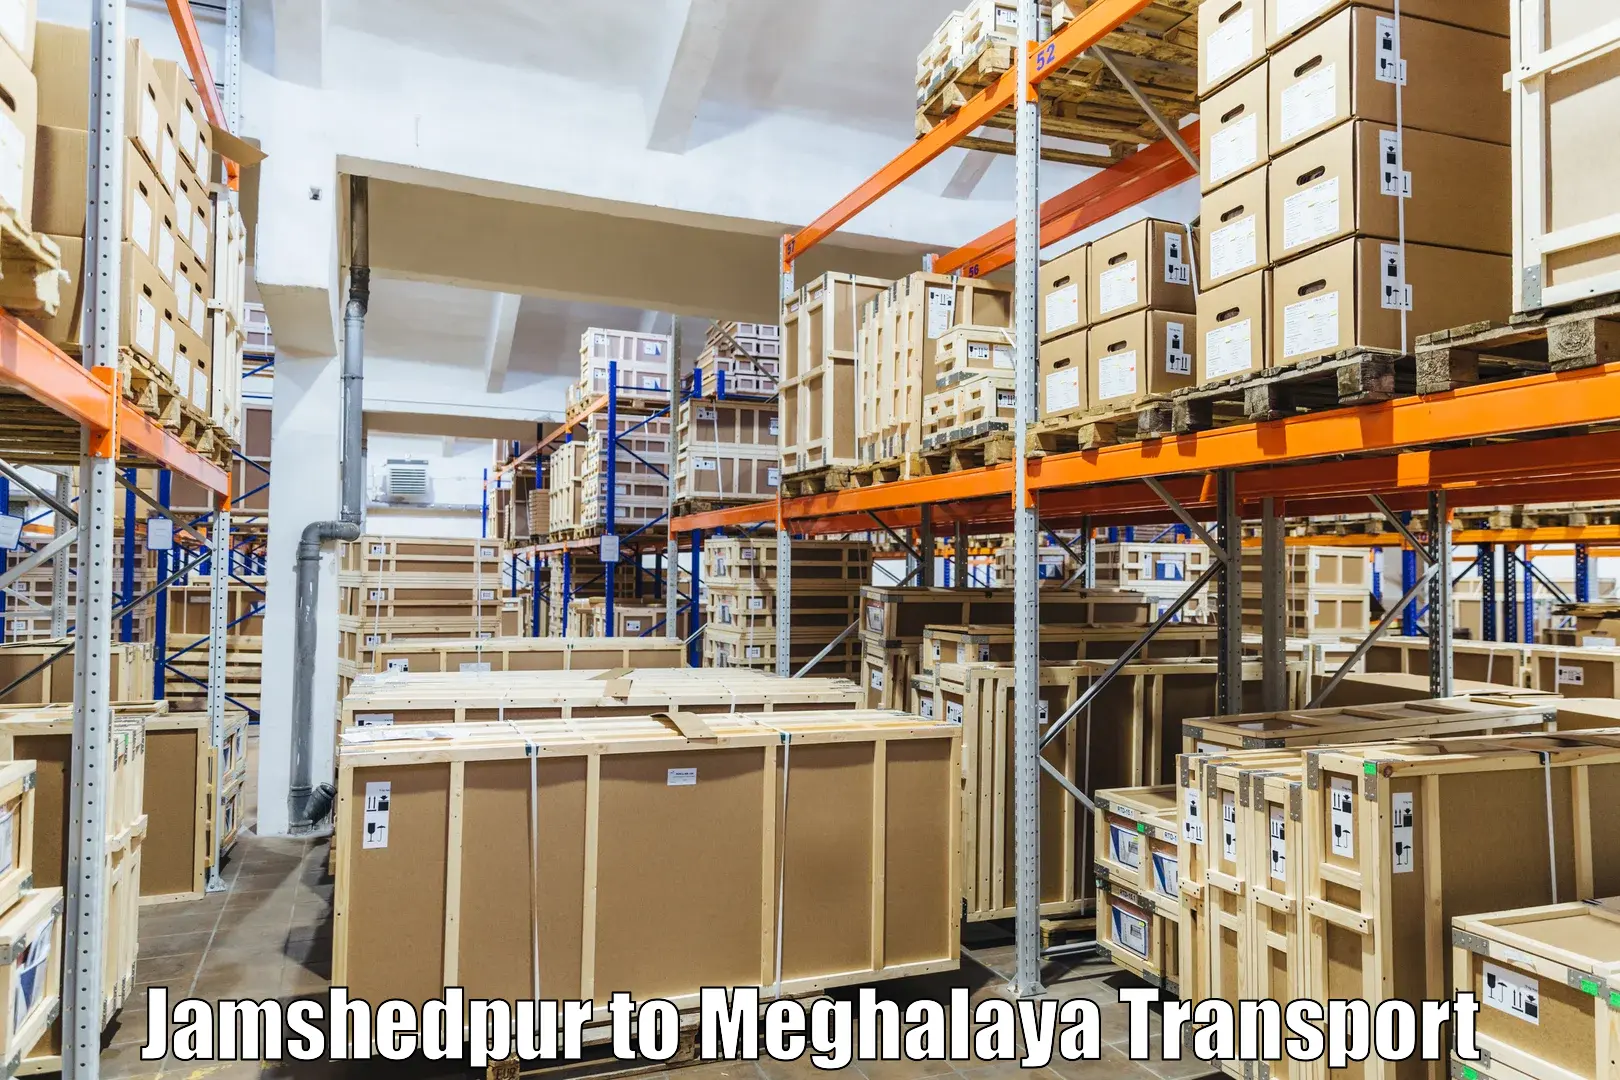 Furniture transport service Jamshedpur to Shillong